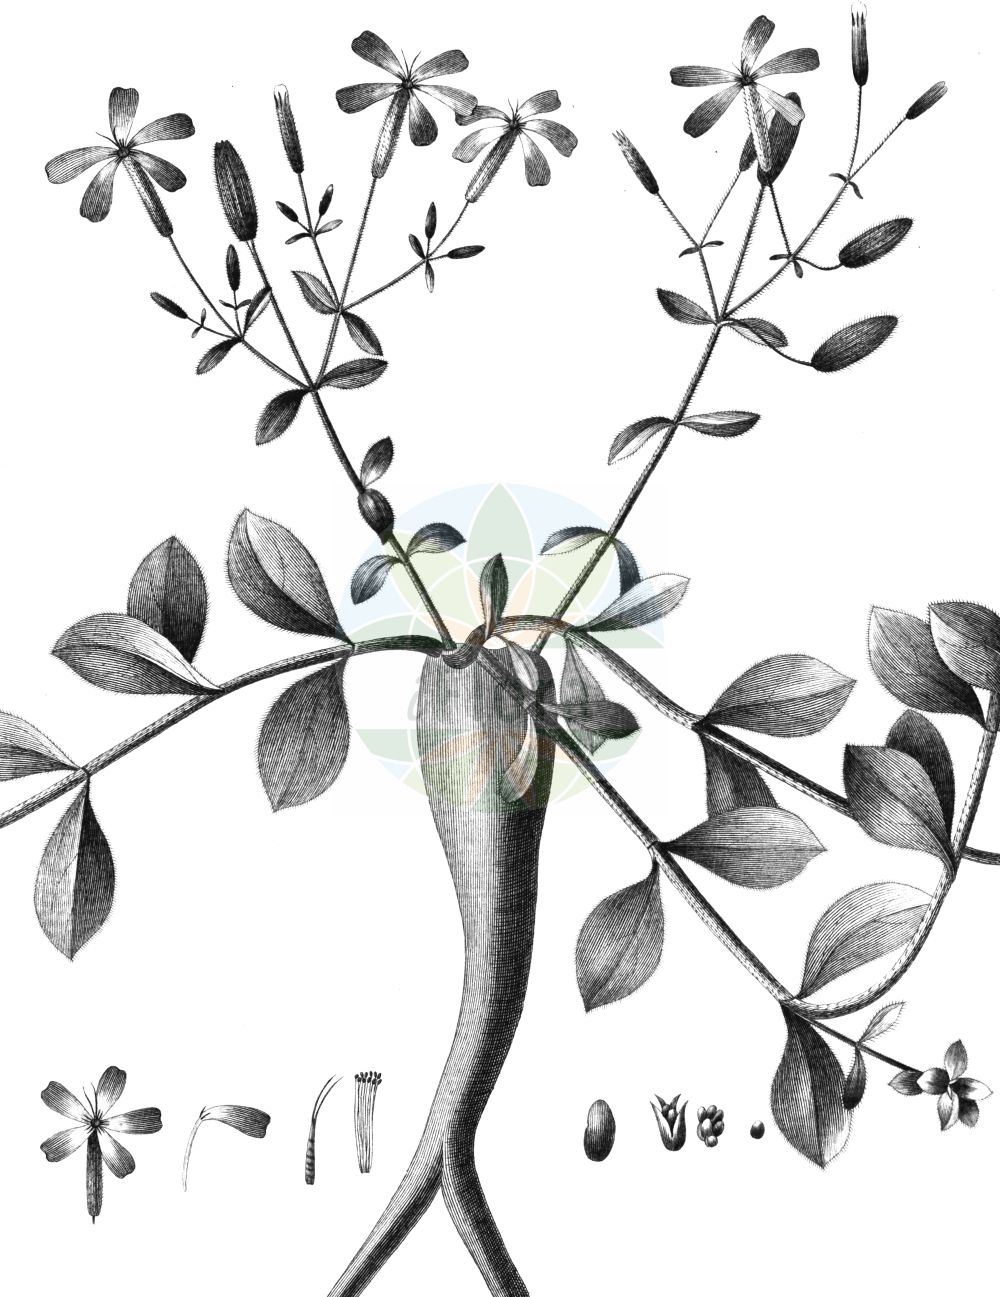 Historische Abbildung von Saponaria ocymoides (Kleines Seifenkraut - Rock Soapwort). Das Bild zeigt Blatt, Bluete, Frucht und Same. ---- Historical Drawing of Saponaria ocymoides (Kleines Seifenkraut - Rock Soapwort). The image is showing leaf, flower, fruit and seed.(Saponaria ocymoides,Kleines Seifenkraut,Rock Soapwort,Saponaria ocymoides,Kleines Seifenkraut,Rock Soapwort,Saponaria,Seifenkraut,Soapwort,Caryophyllaceae,Nelkengewächse,Pink family,Blatt,Bluete,Frucht,Same,leaf,flower,fruit,seed)